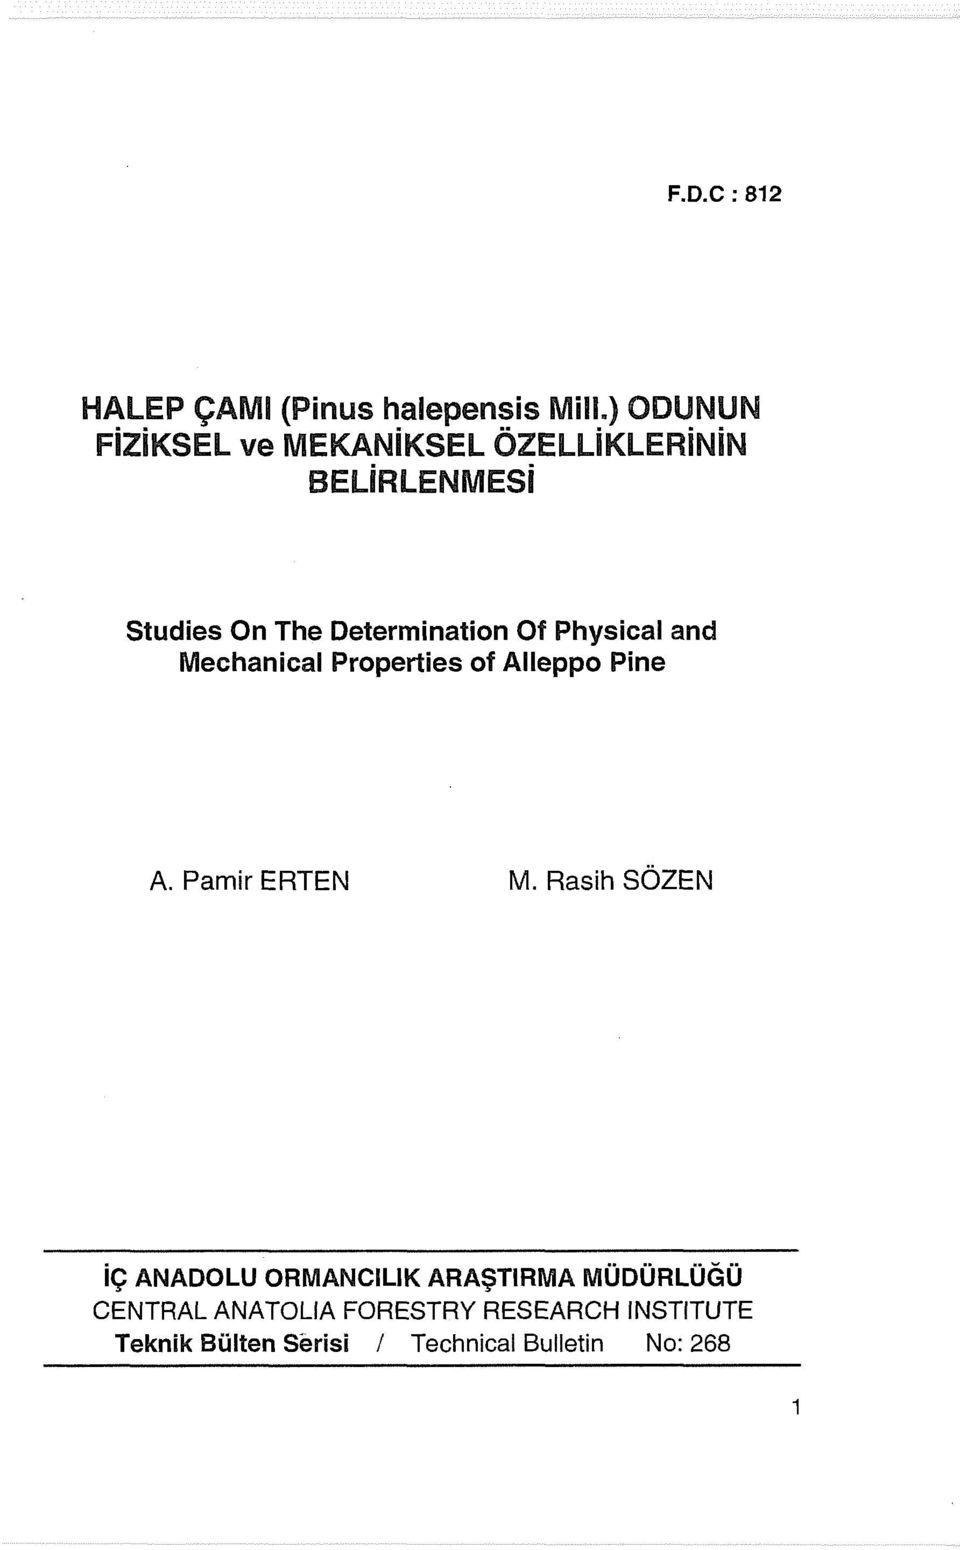 Of Physical and Mechanical Properties of Alleppo Pine A. Pamir ERTEN M.